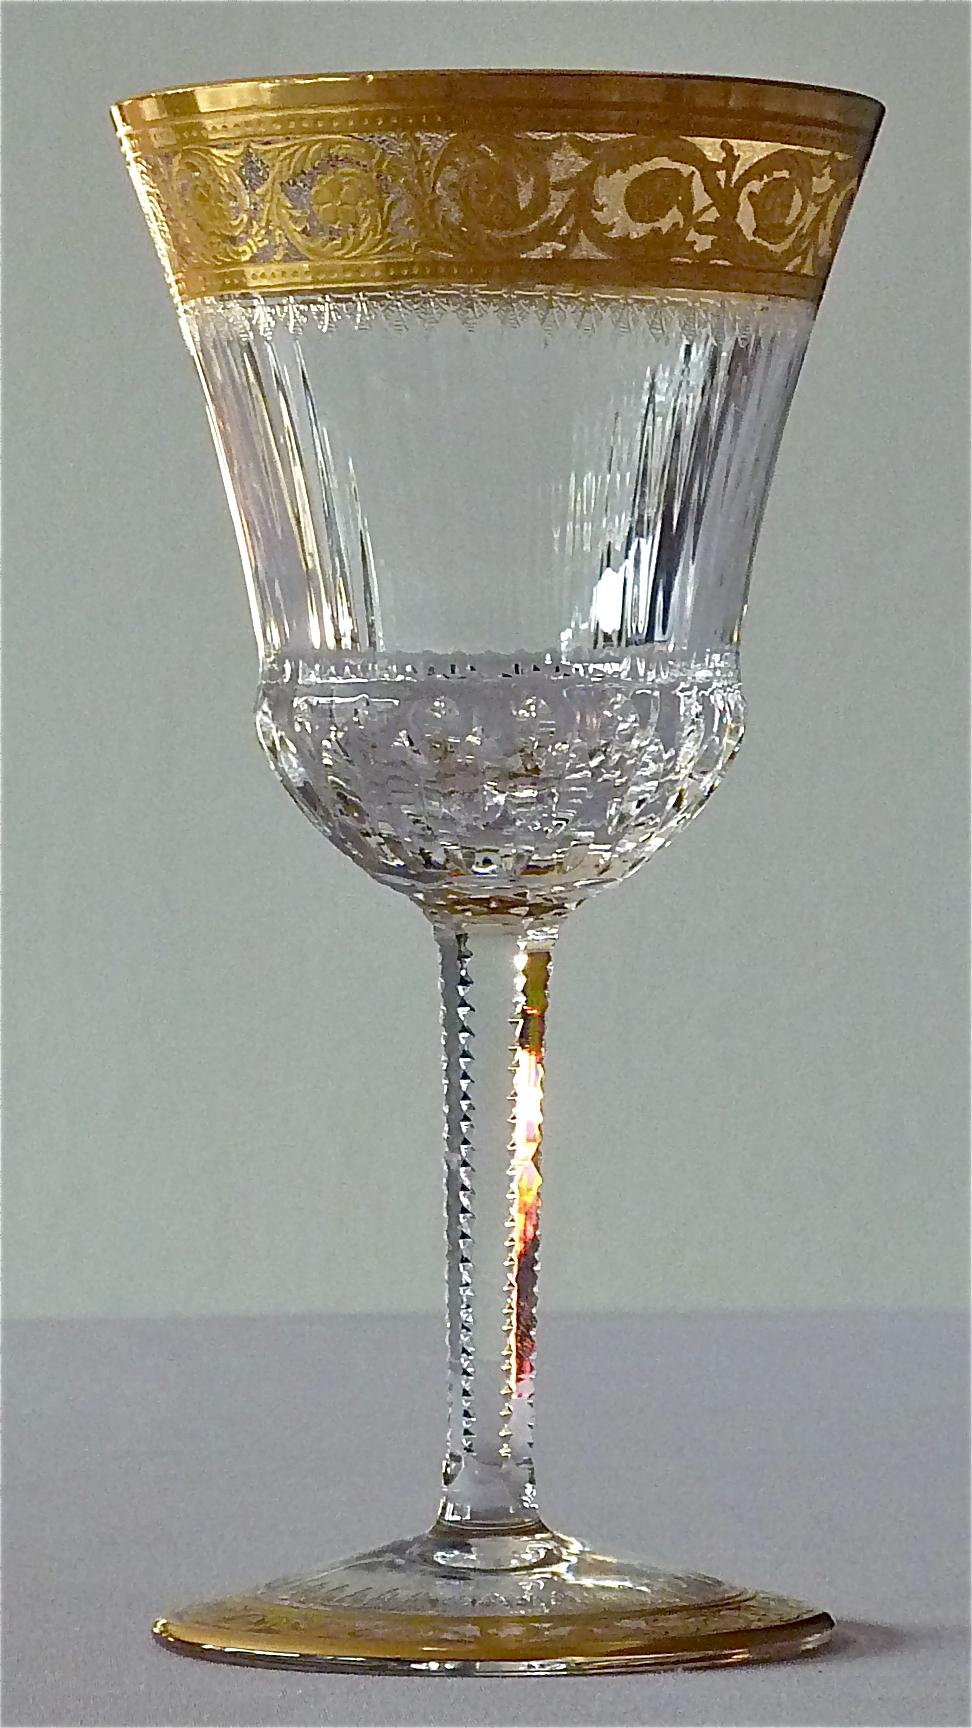 Exquisiter und luxuriöser Satz von 12 Weingläsern aus vergoldetem:: facettiertem Kristall von St. Louis 